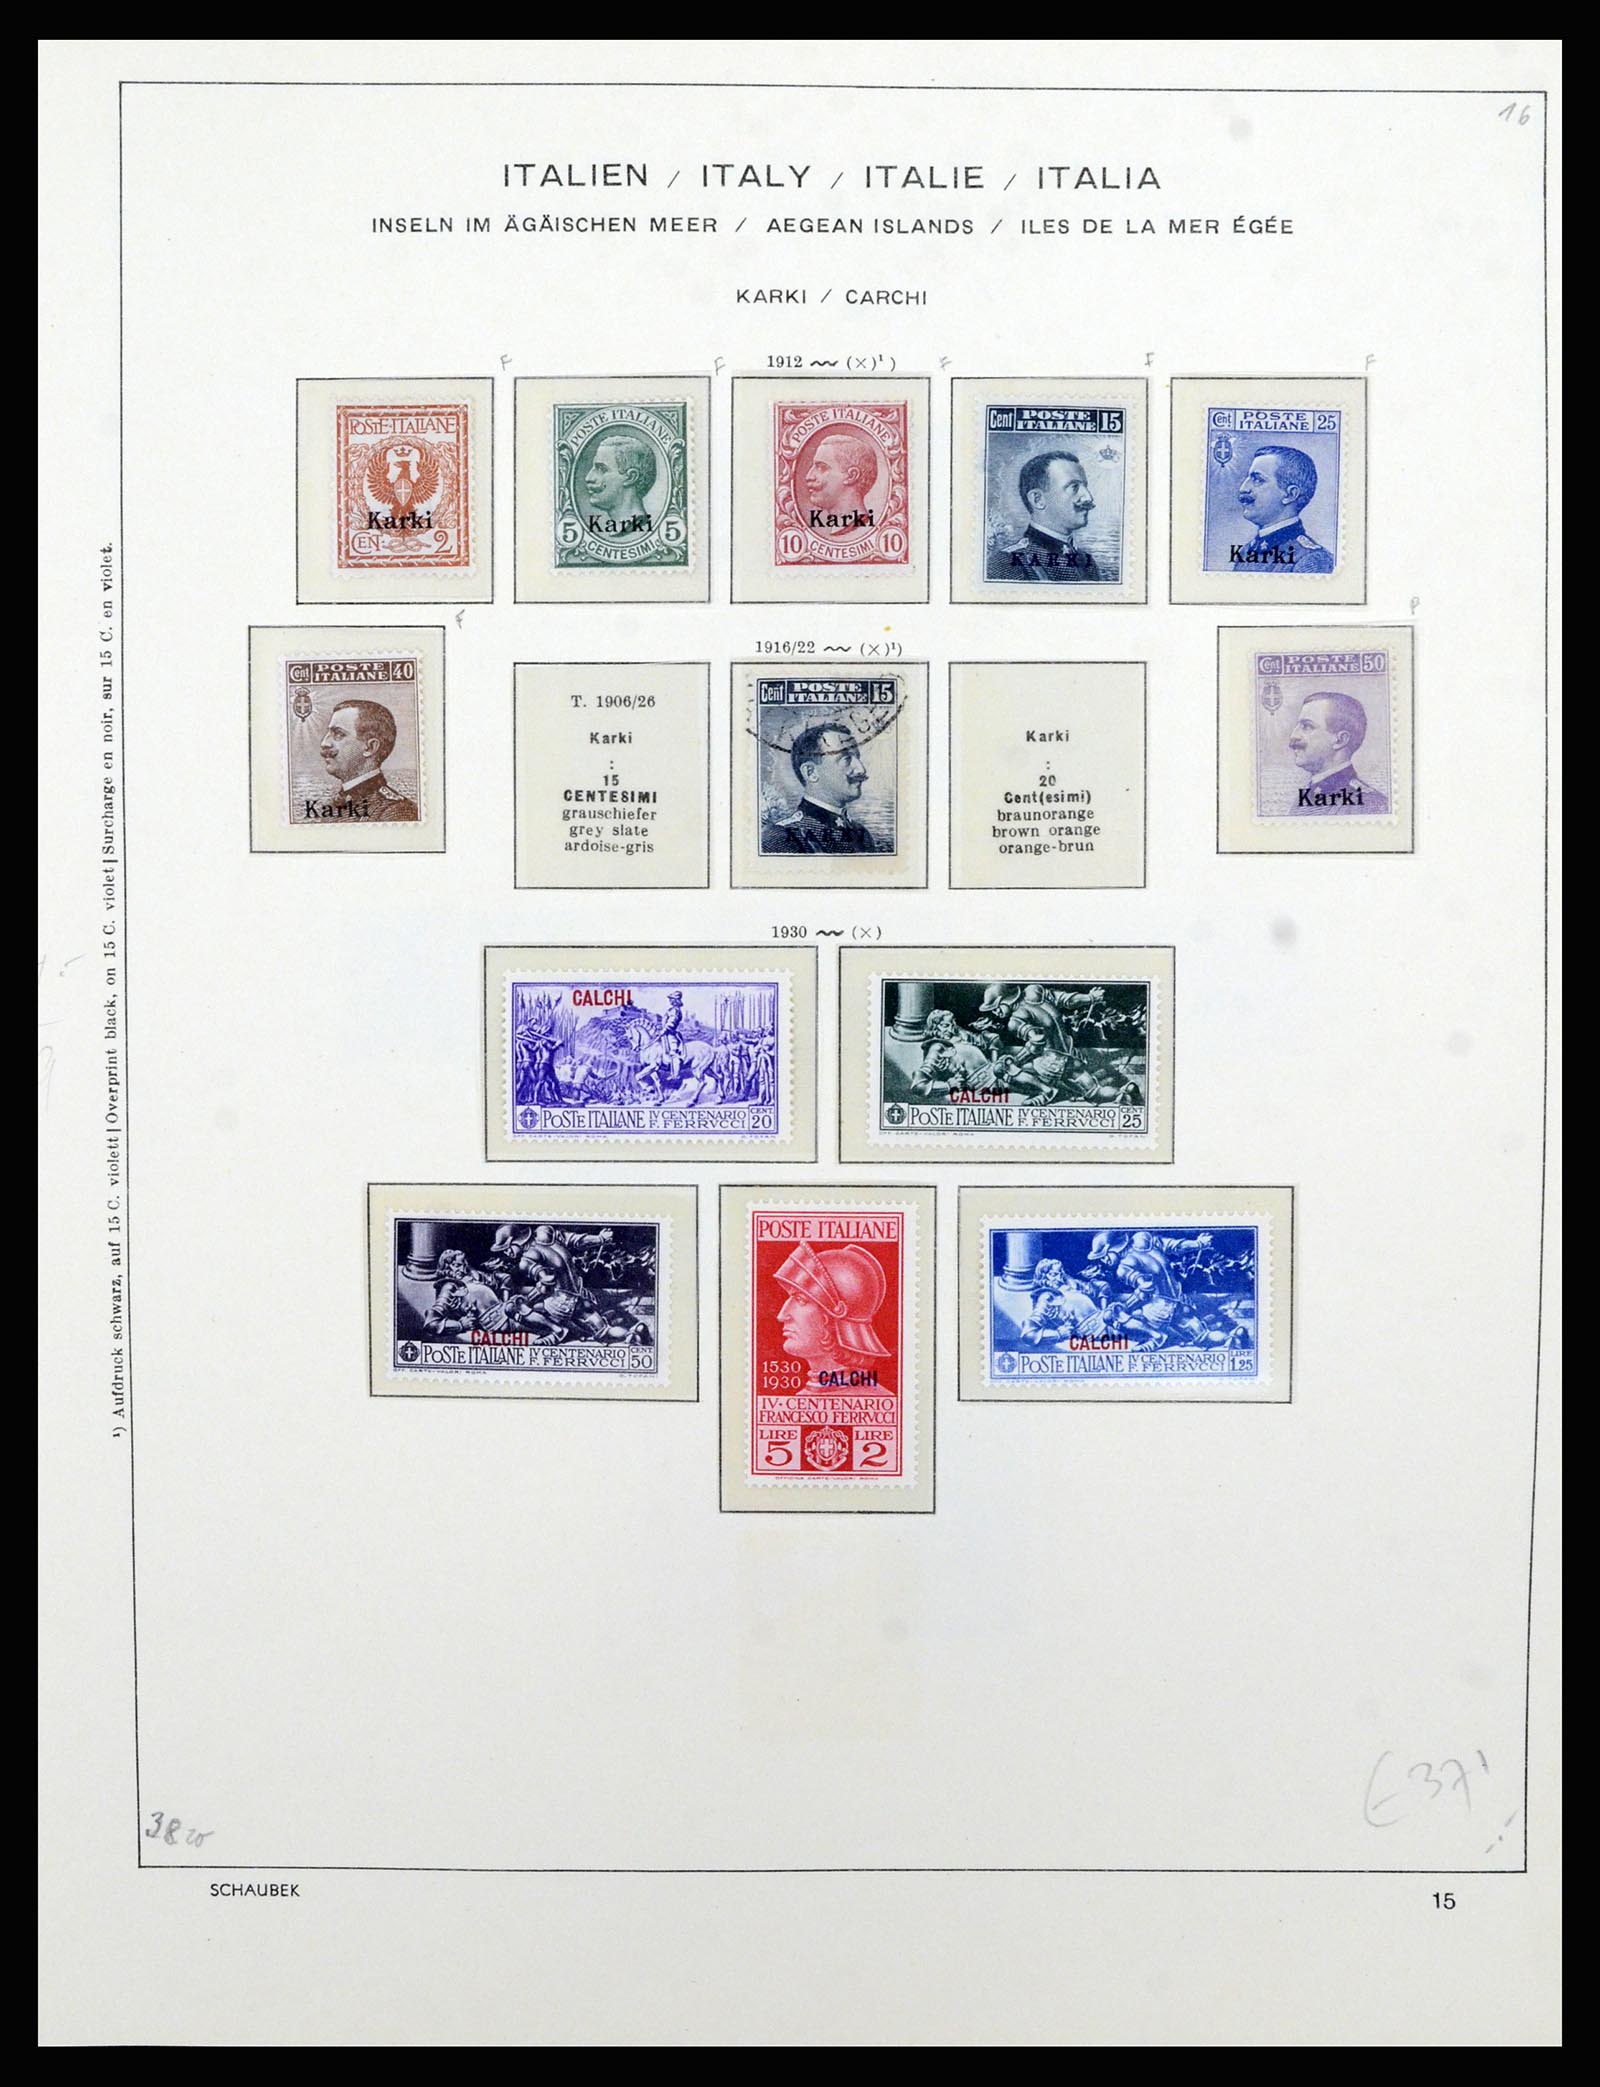 36577 041 - Stamp collection 36577 Italiaanse gebieden 1870-1940.